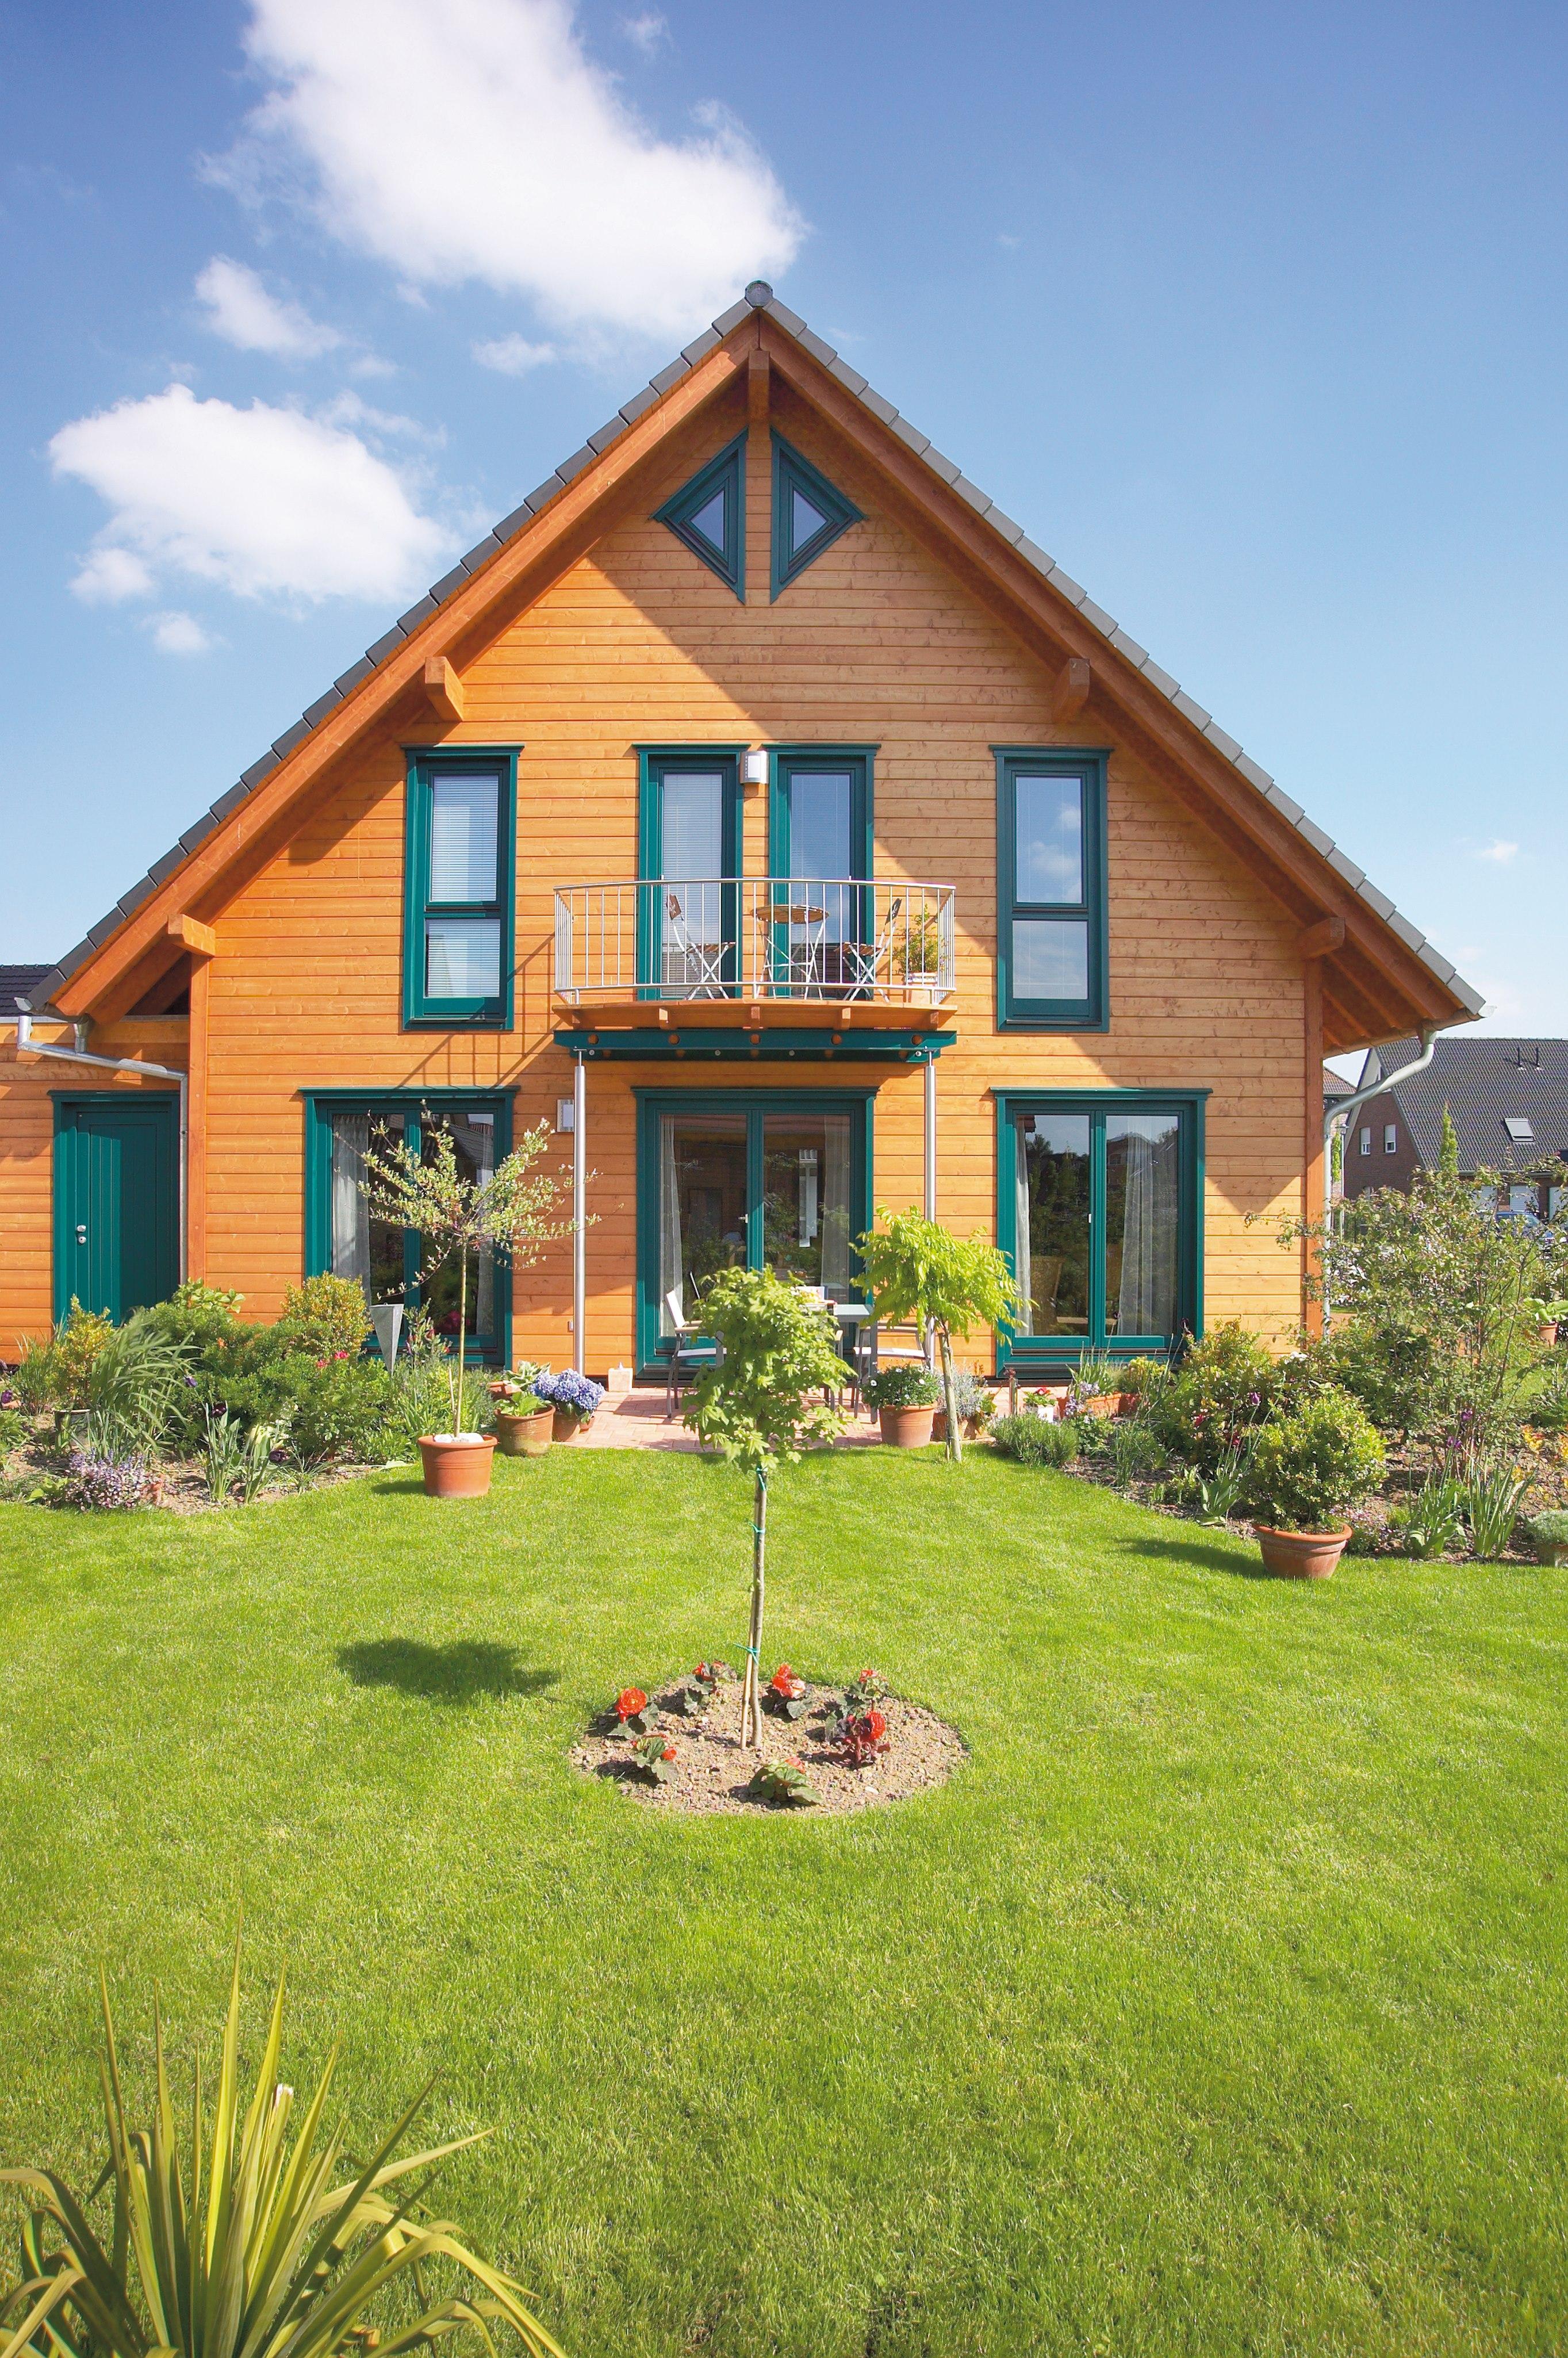 Holzhaus mit grünen Rahmen #holzhaus #gartengestaltung #hausgestaltung ©Stommel Haus